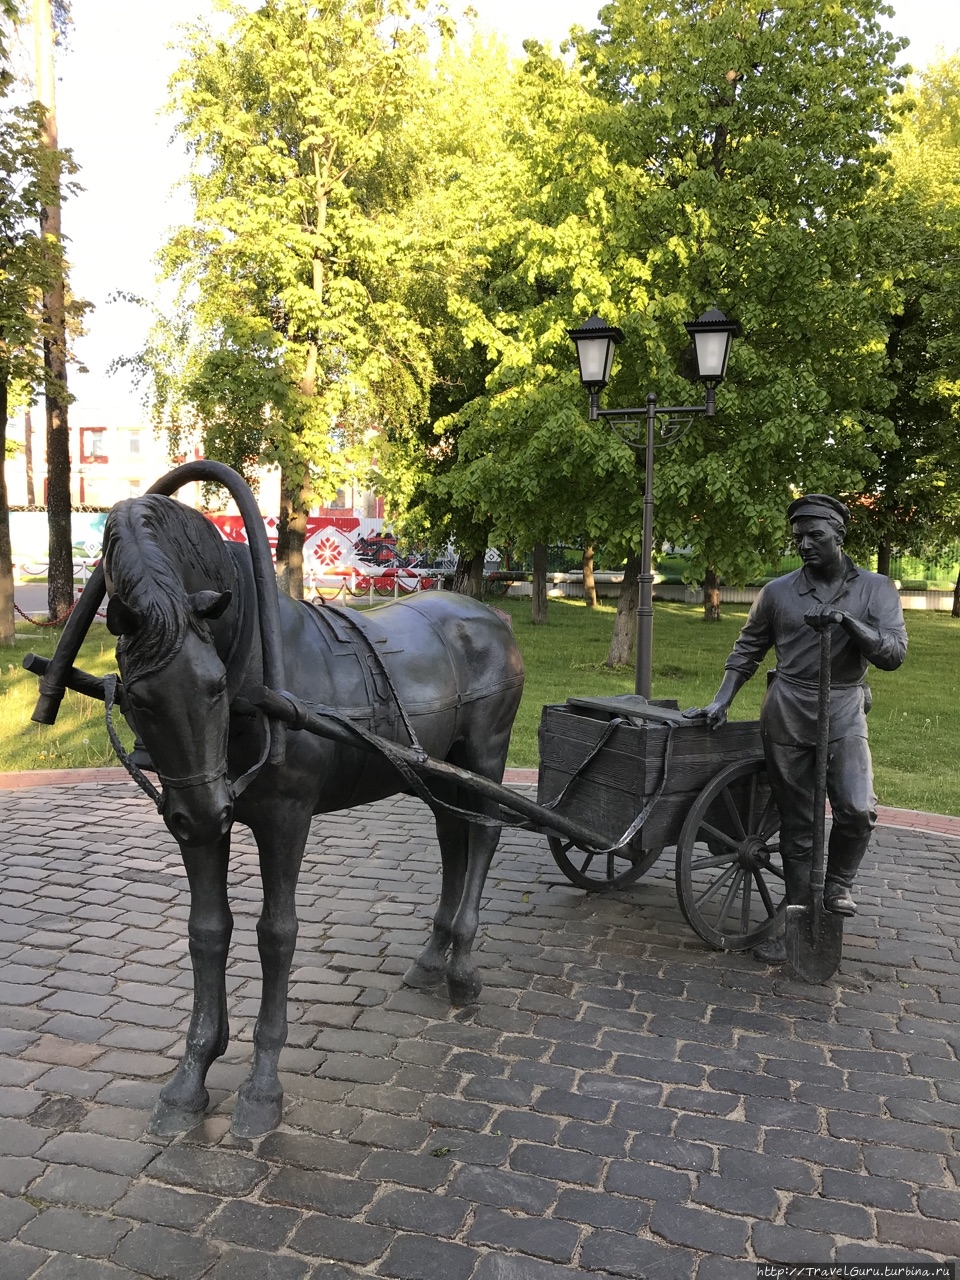 И такая скульптурная композиция есть на площадке перед заводом, как напоминание о том насколько упростилась фермерская жизнь с обретением ими железных коней Минск, Беларусь